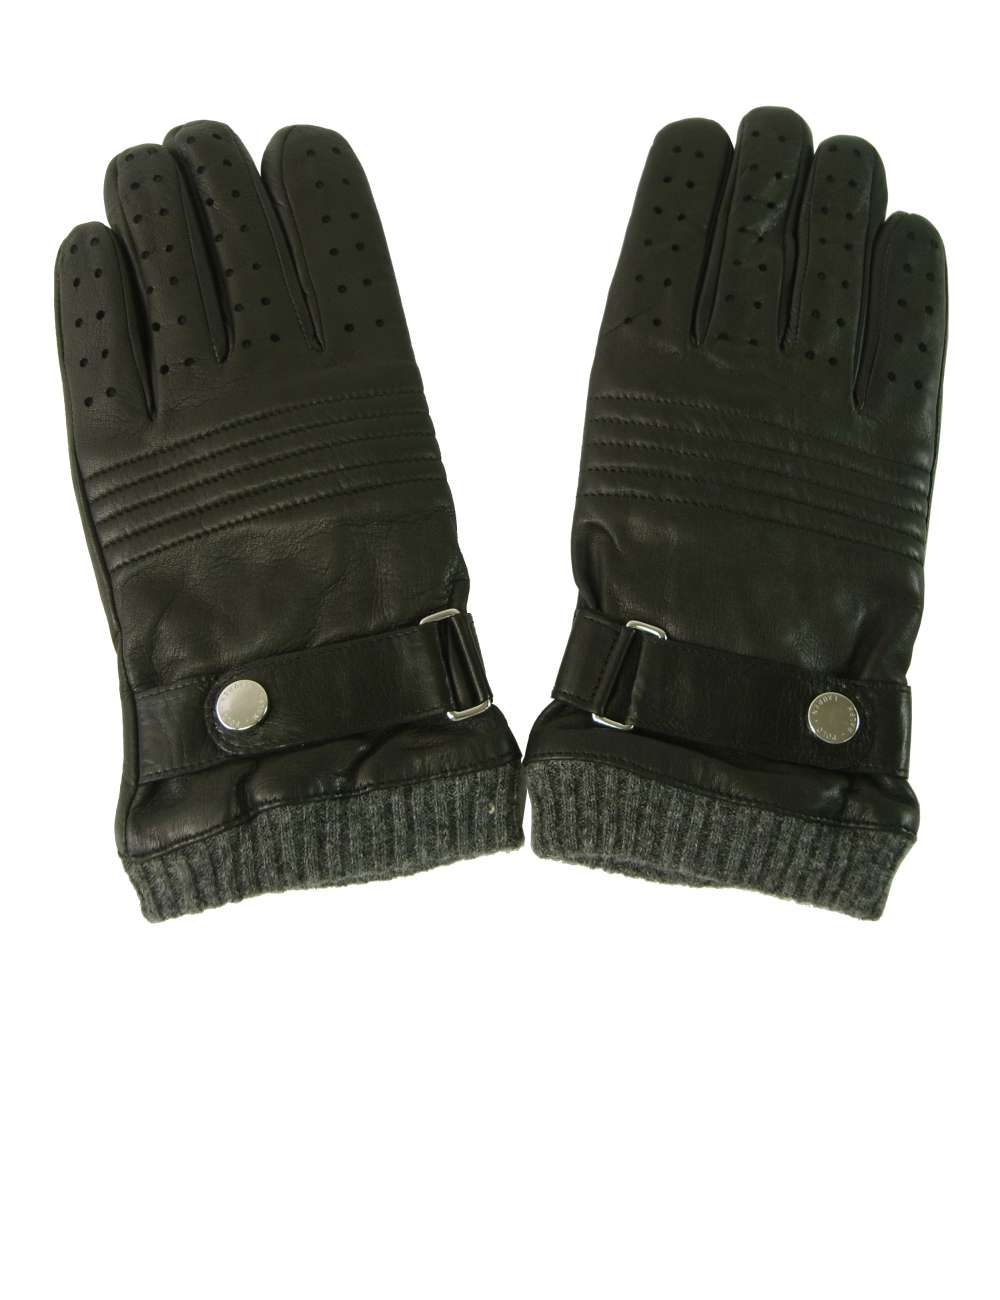 ラルフ ローレン 手袋 メンズ ブラック グローブ ベルト付き Sサイズ インポートブランドショップpiazza